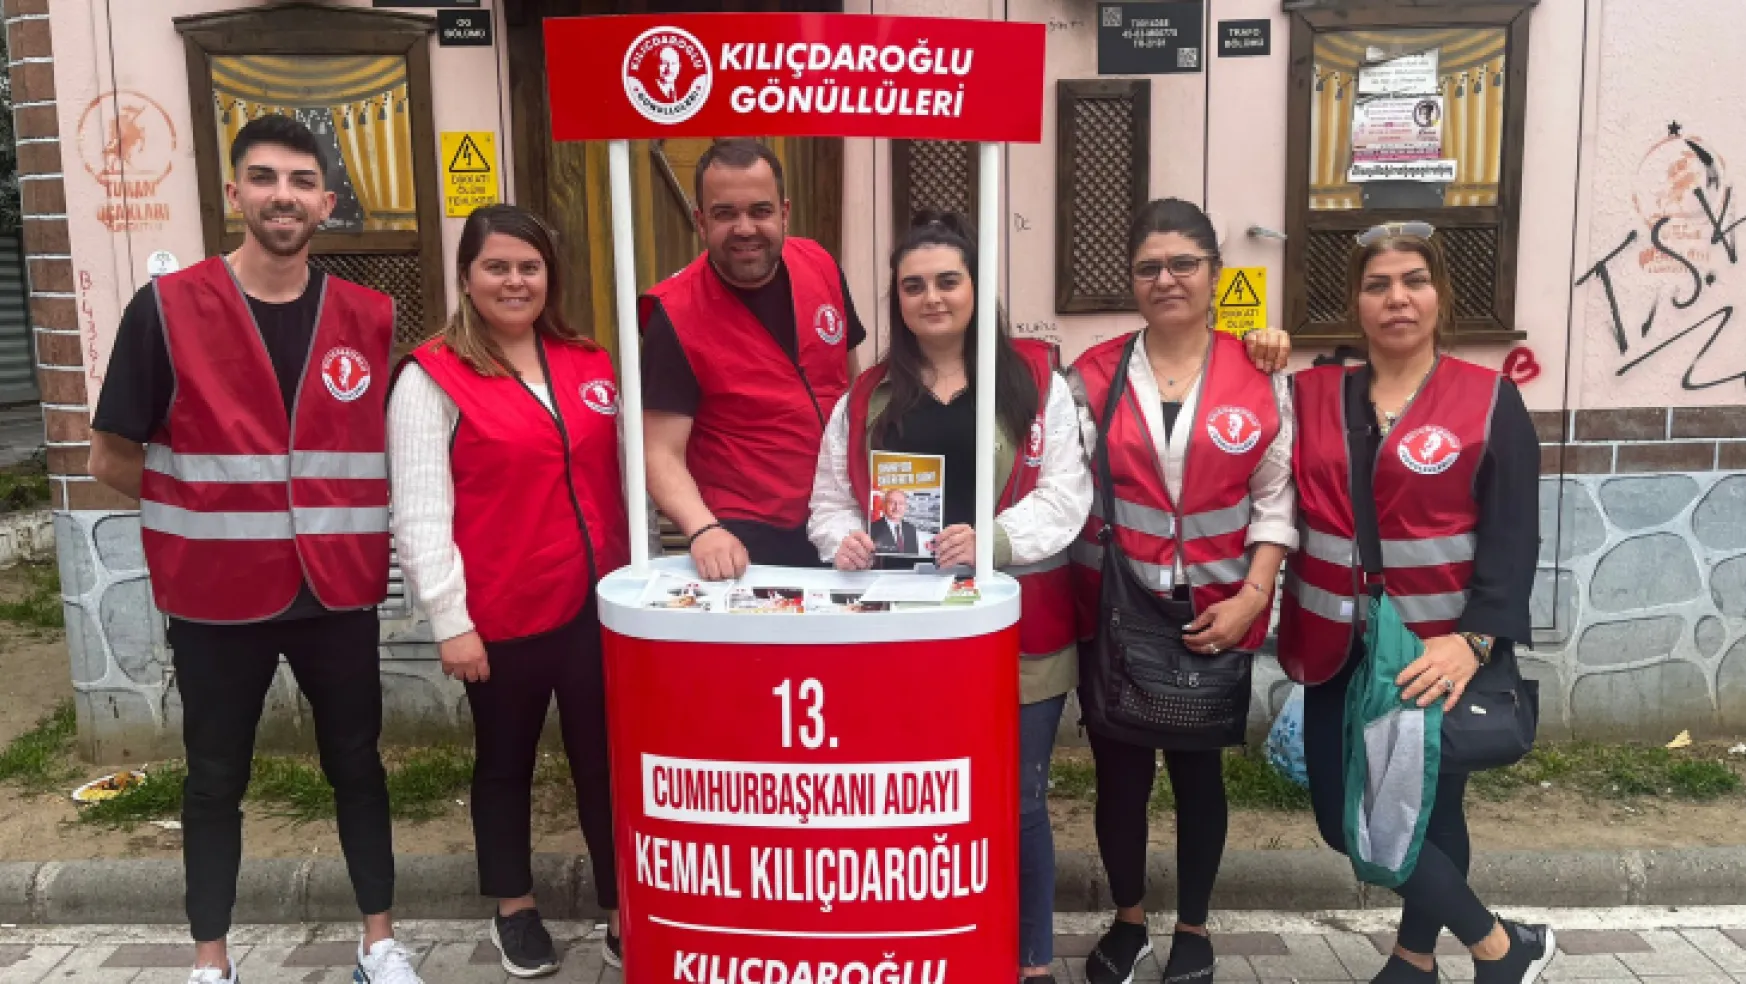 Turgutlu Kılıçdaroğlu Gönüllüleri Gece Gündüz Çalışıyor